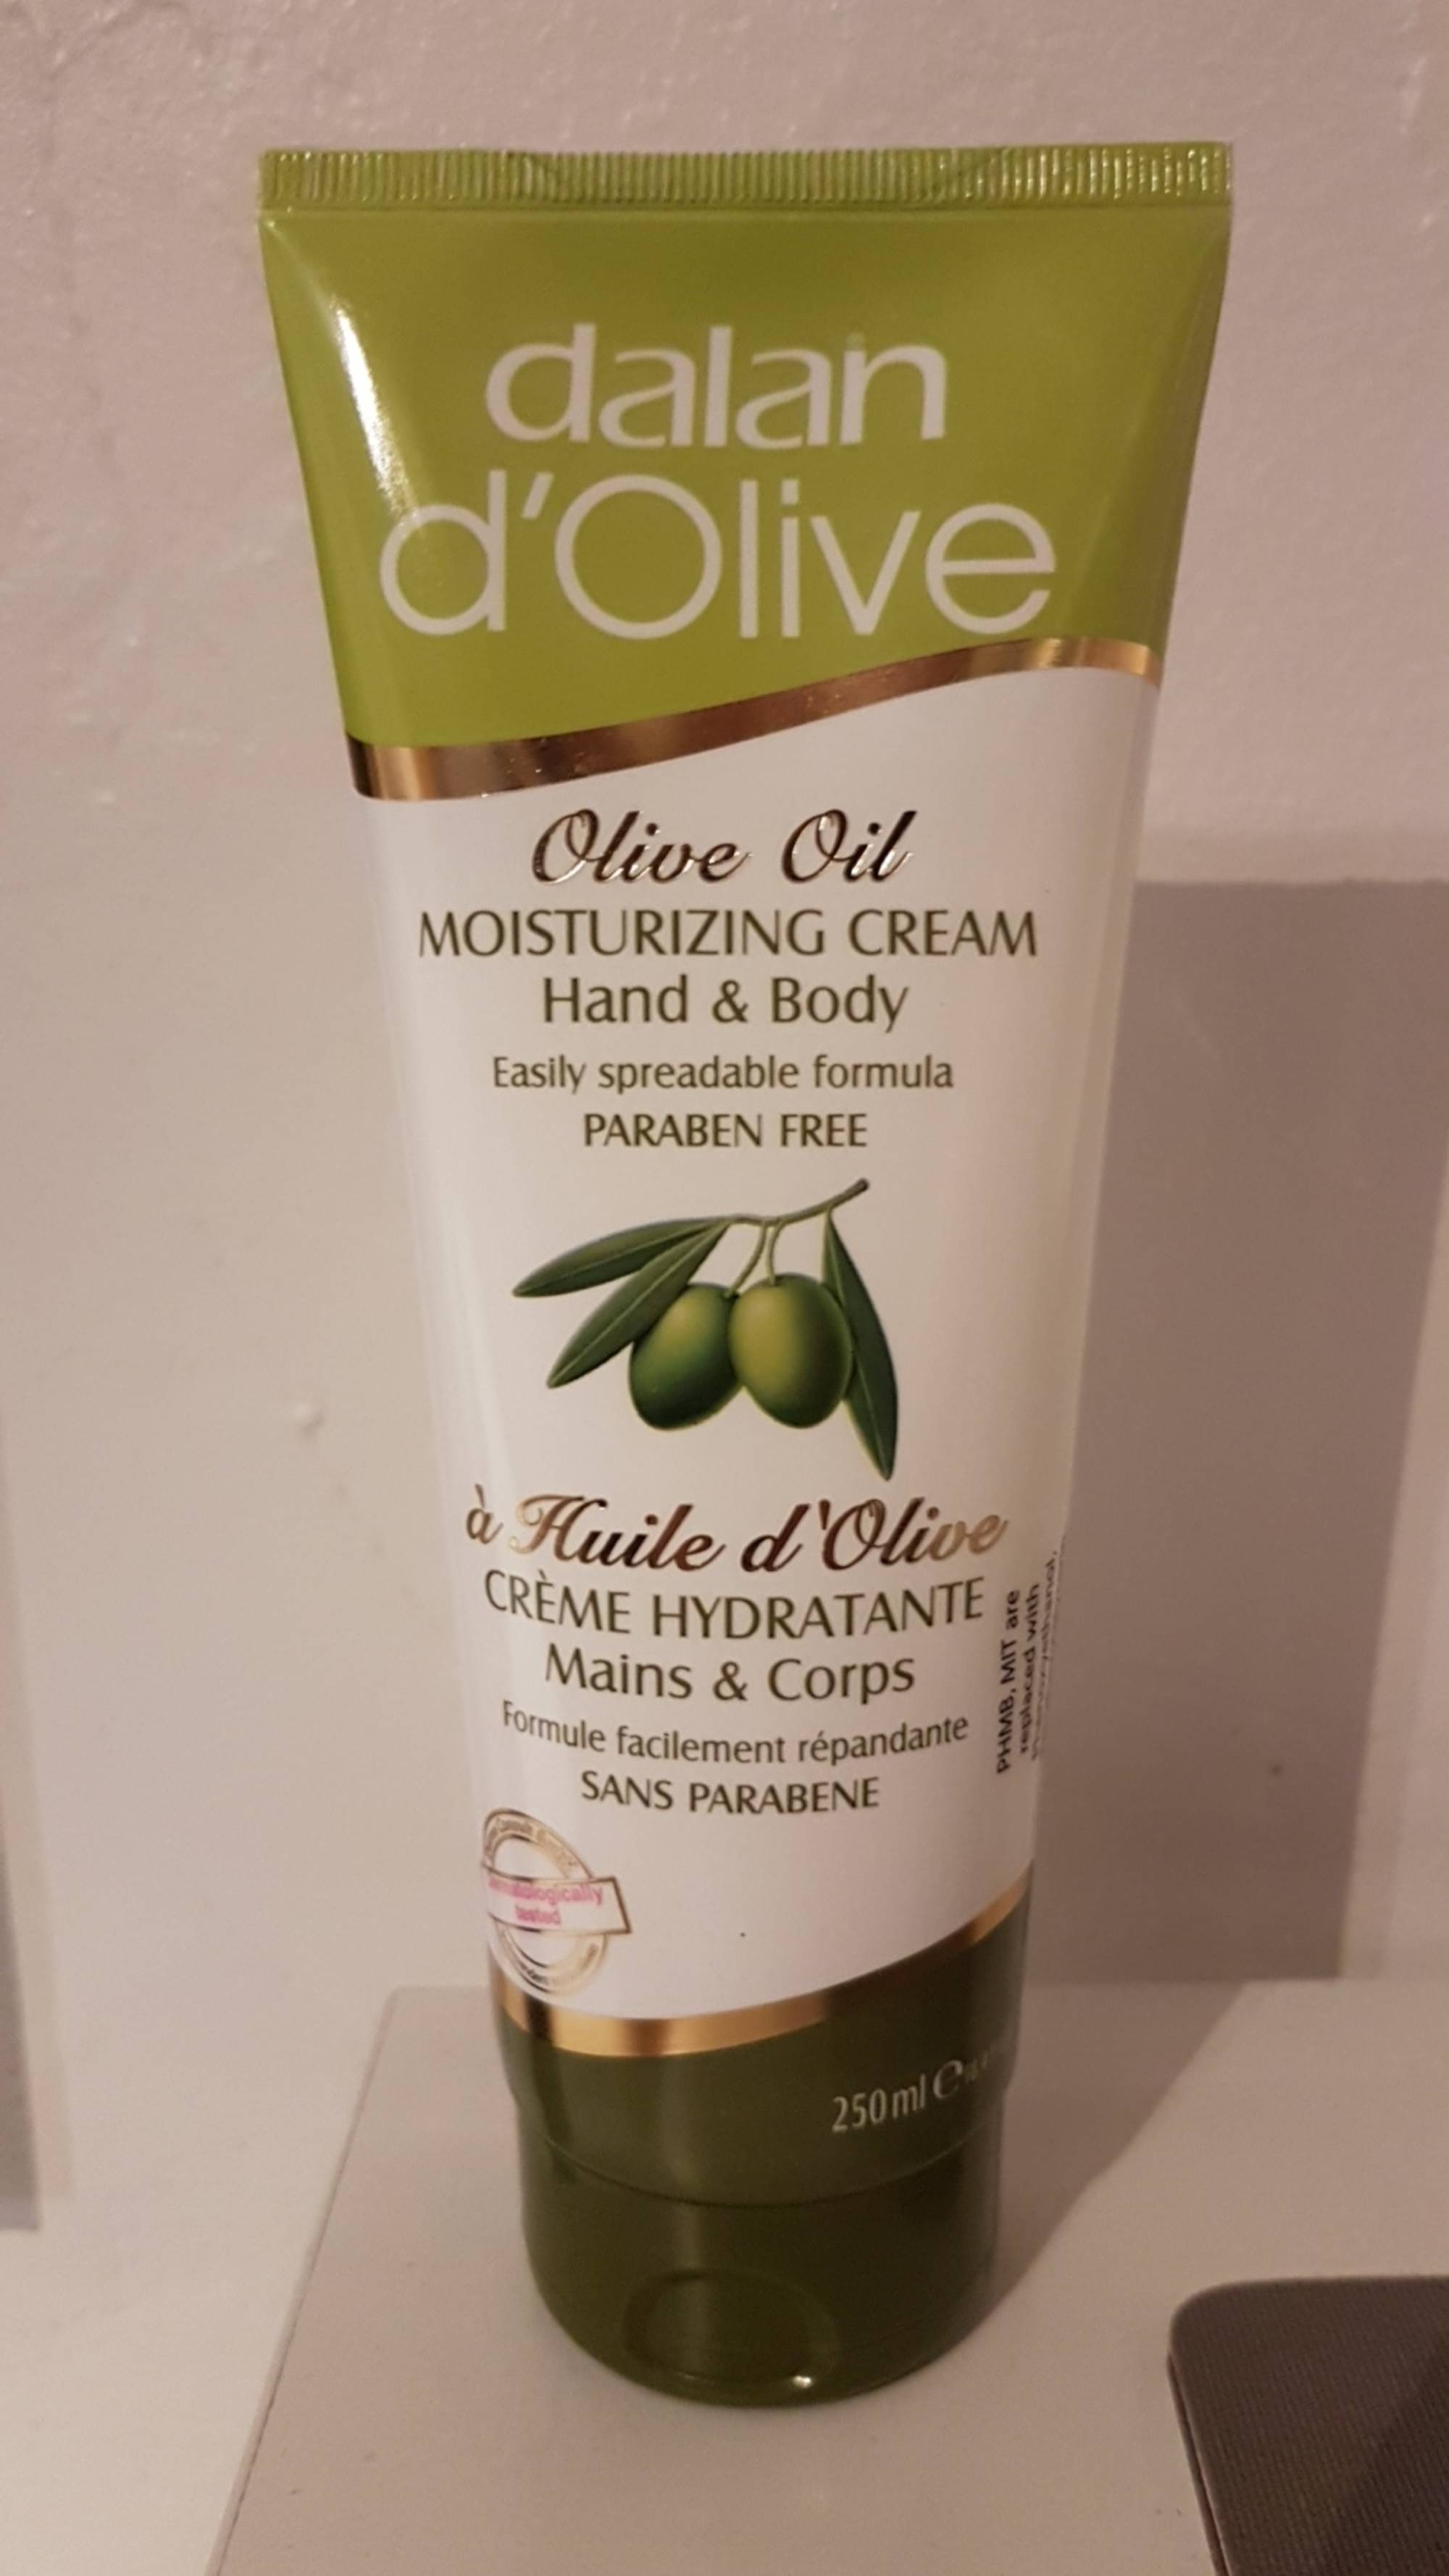 DALAN D'OLIVE - Crème hydratante mains & corps à Huile d'Olive